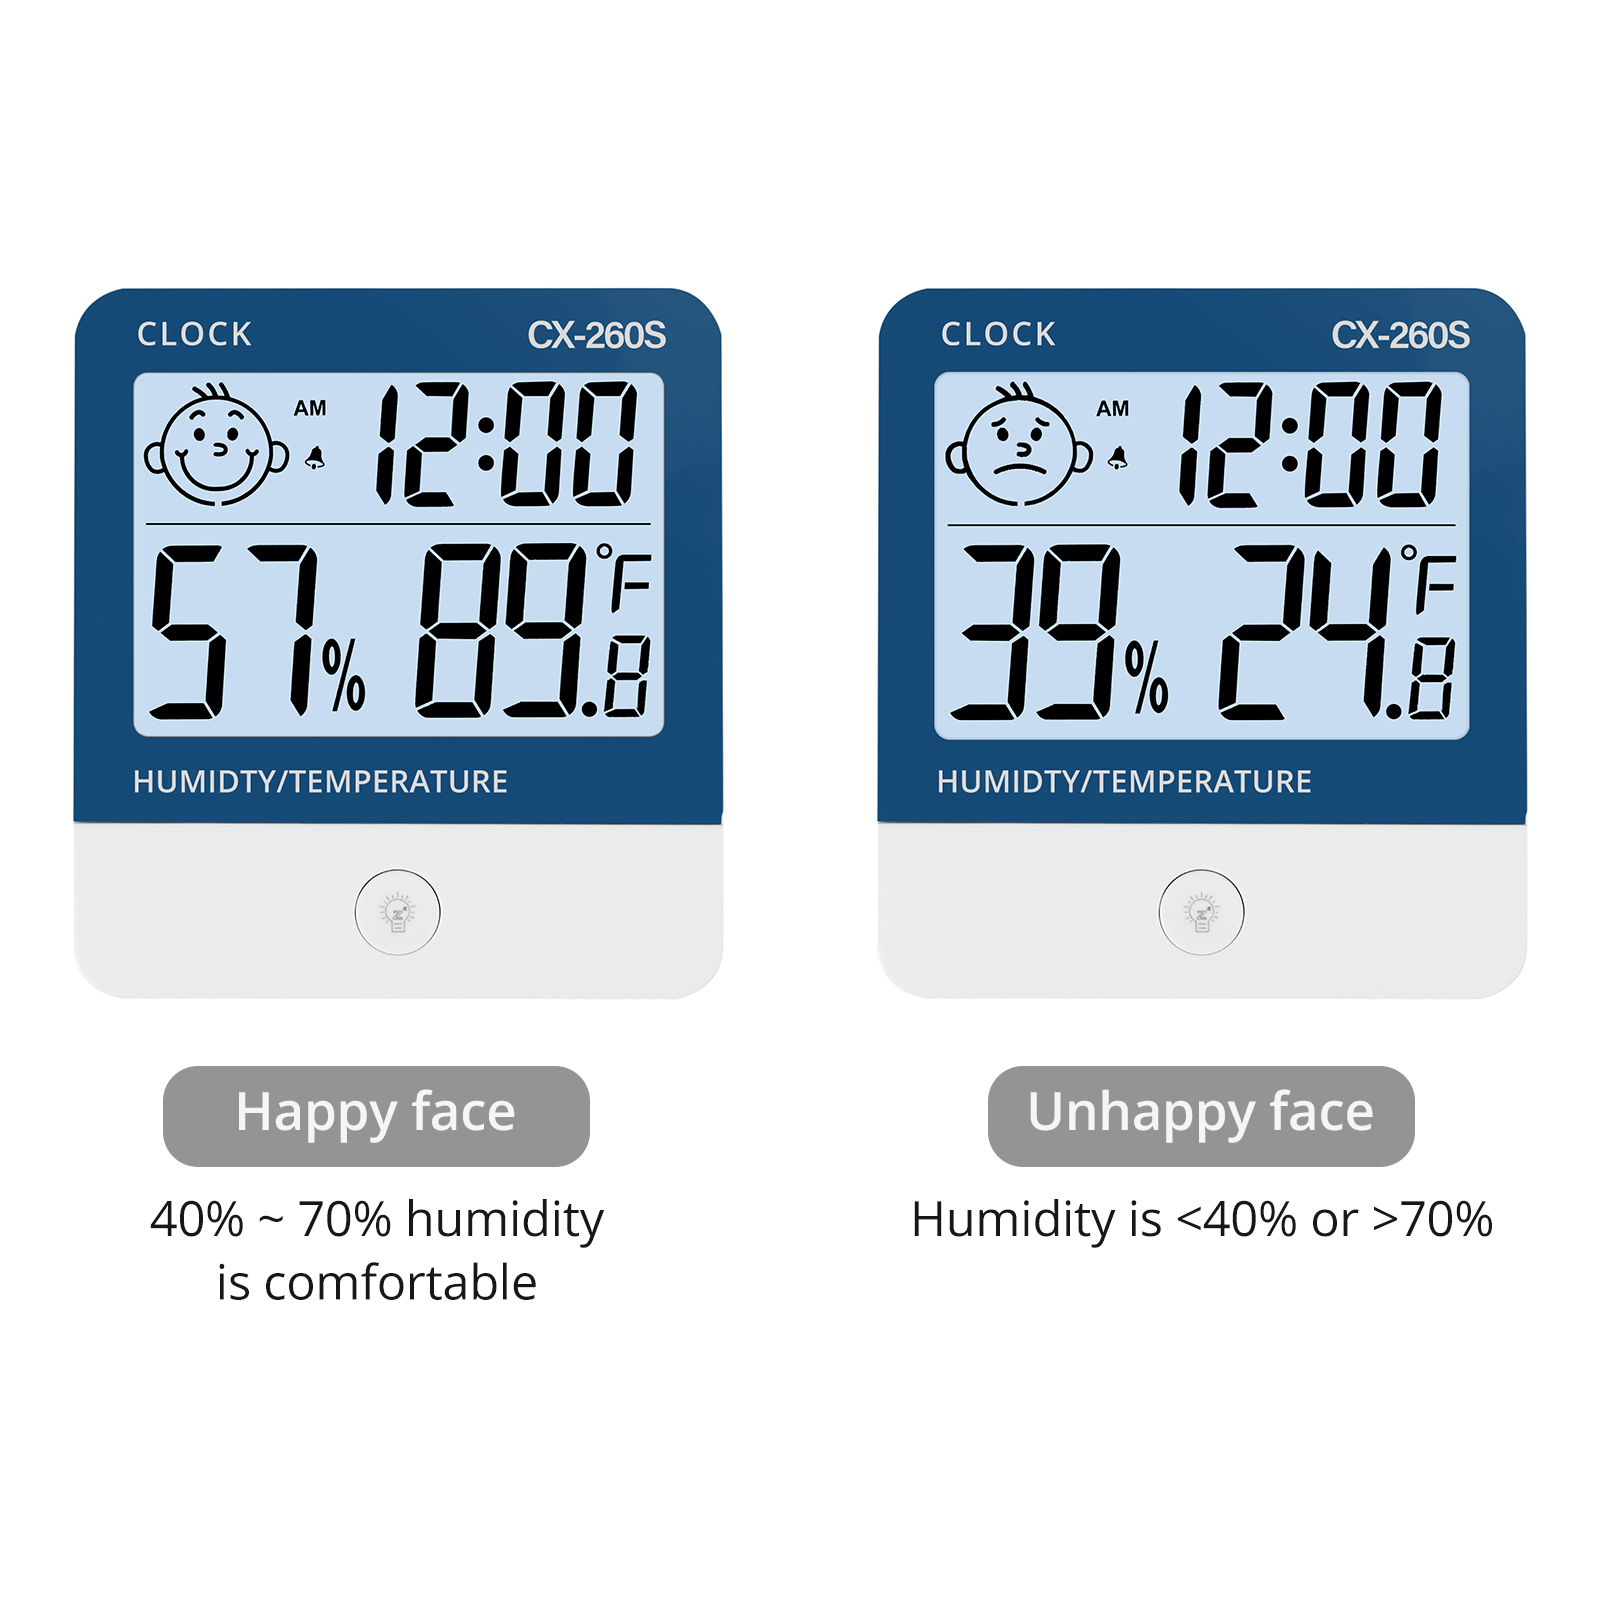 Digitales Zweizonen-Thermometer mit Uhr und Neigungsmesser